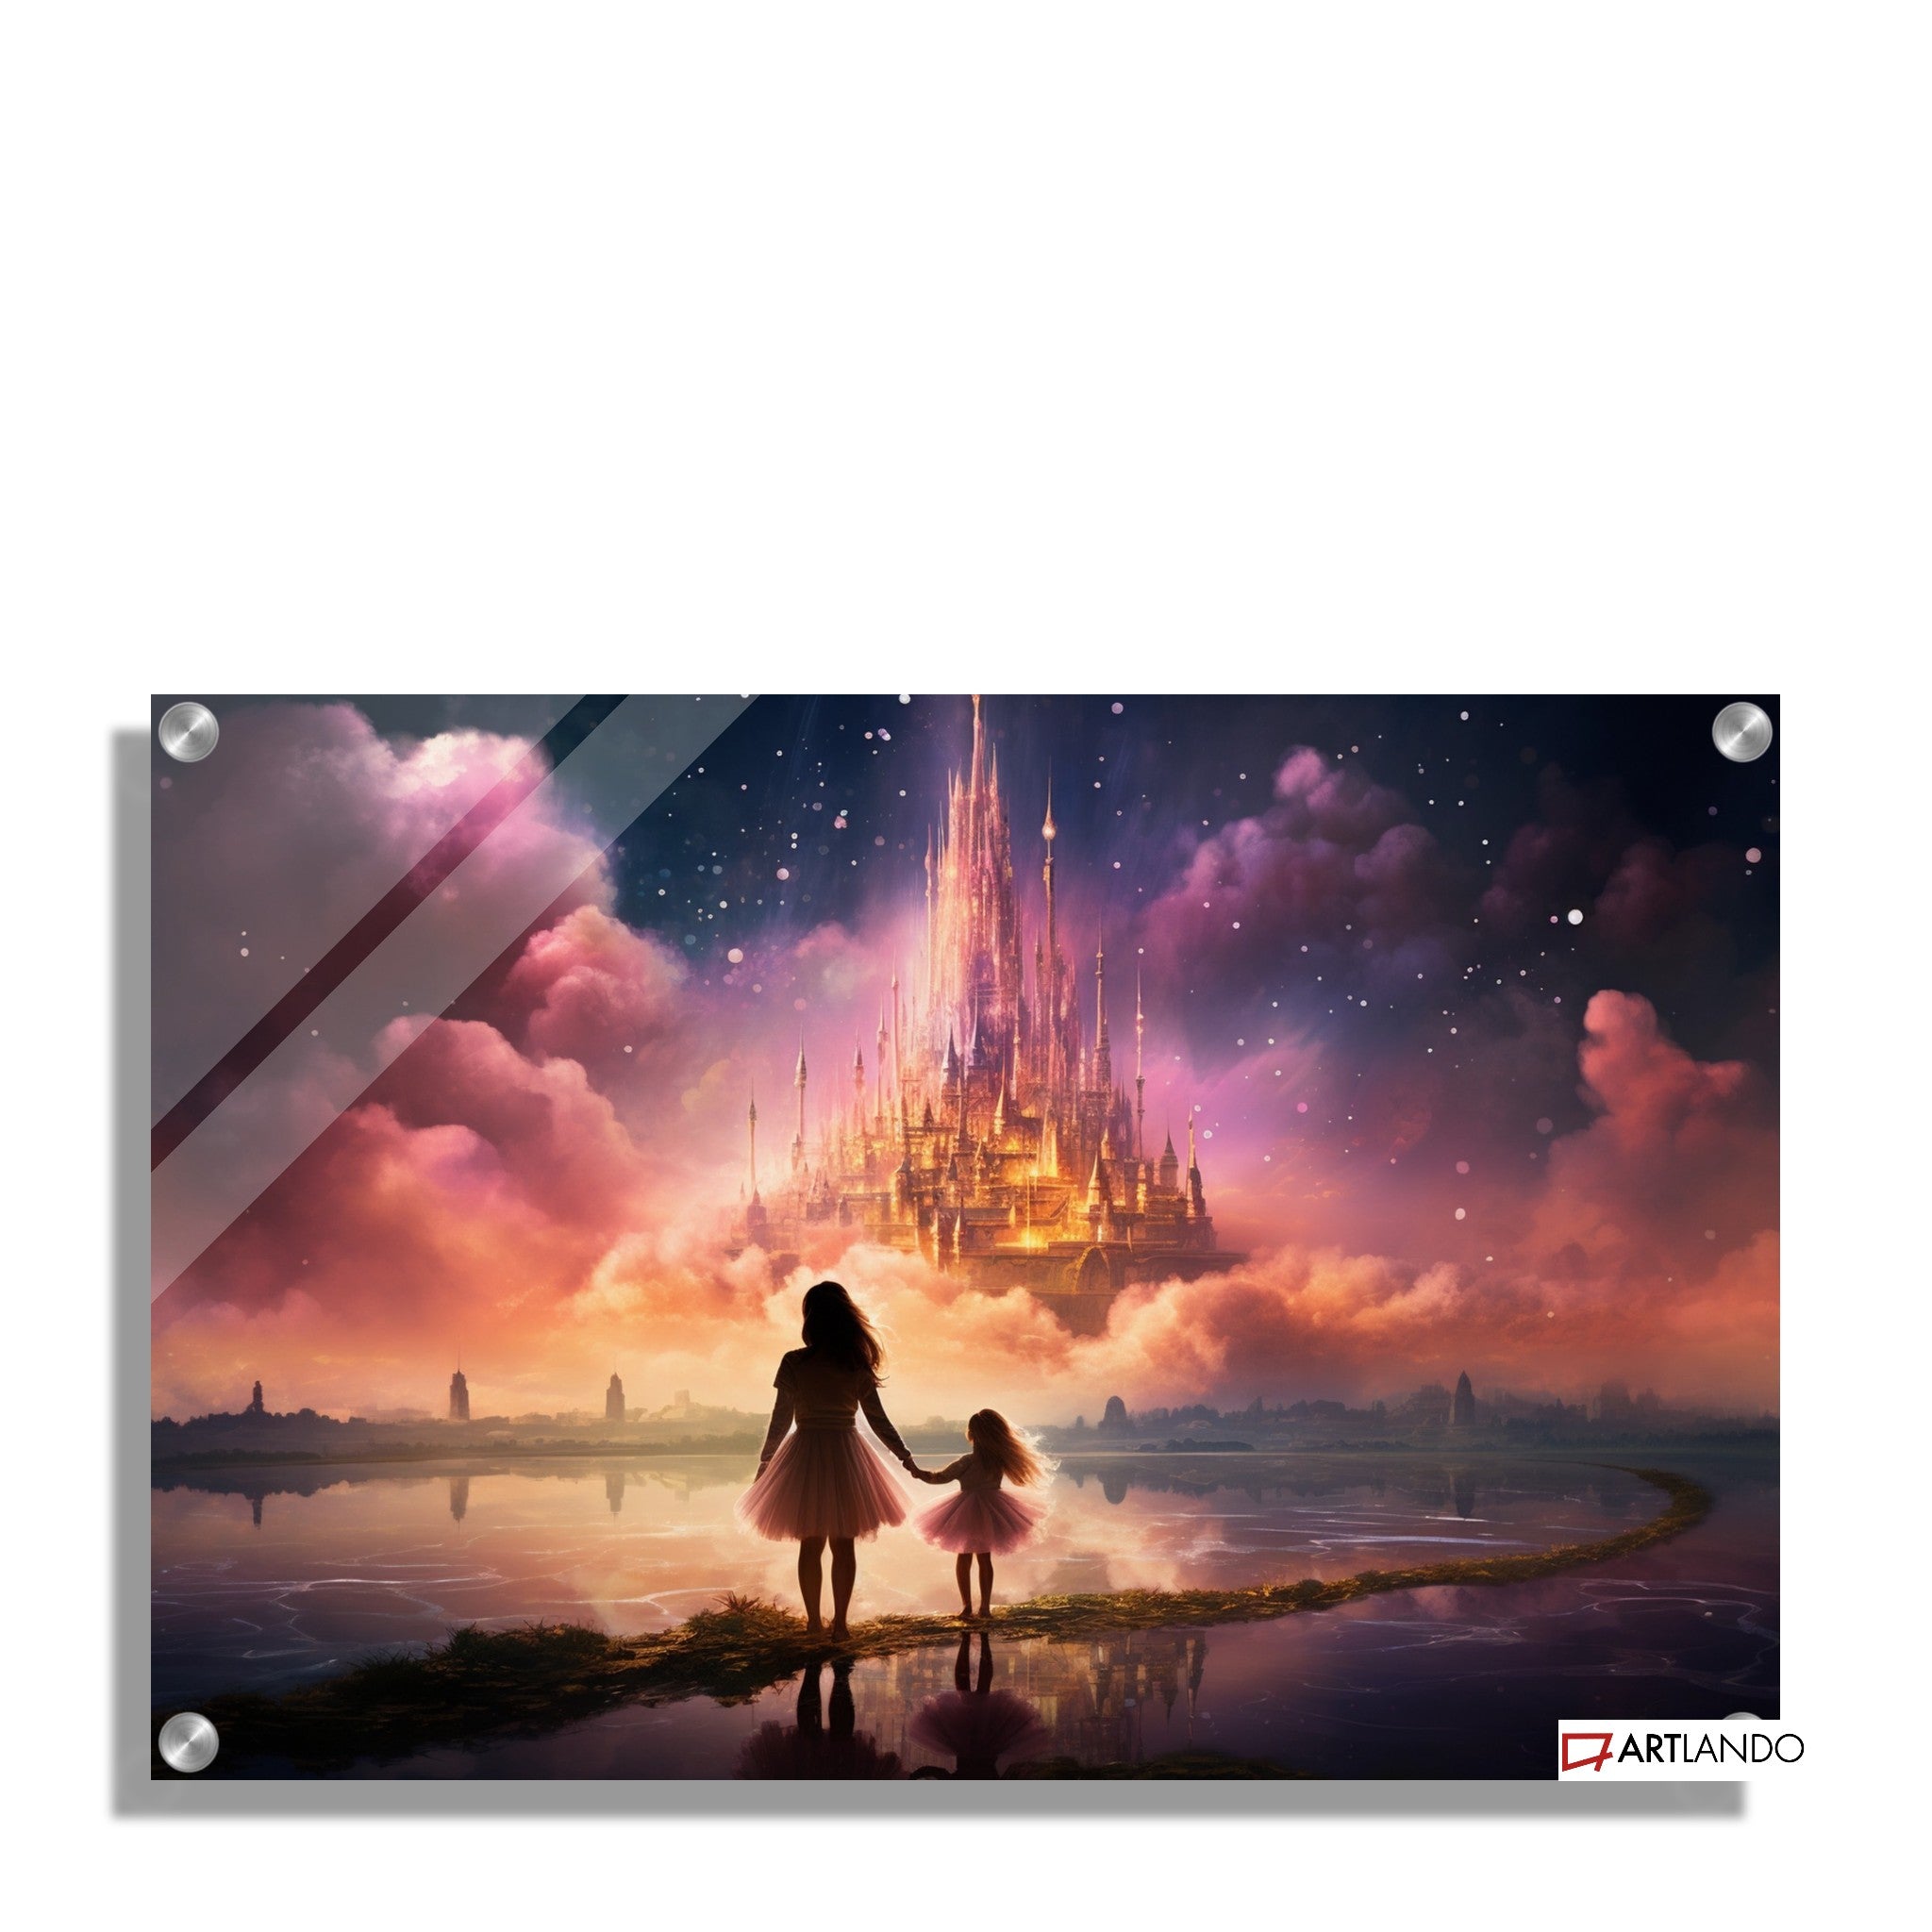 Zwei Mädchen blicken auf magisches Schloss umgeben von pinken Wolken